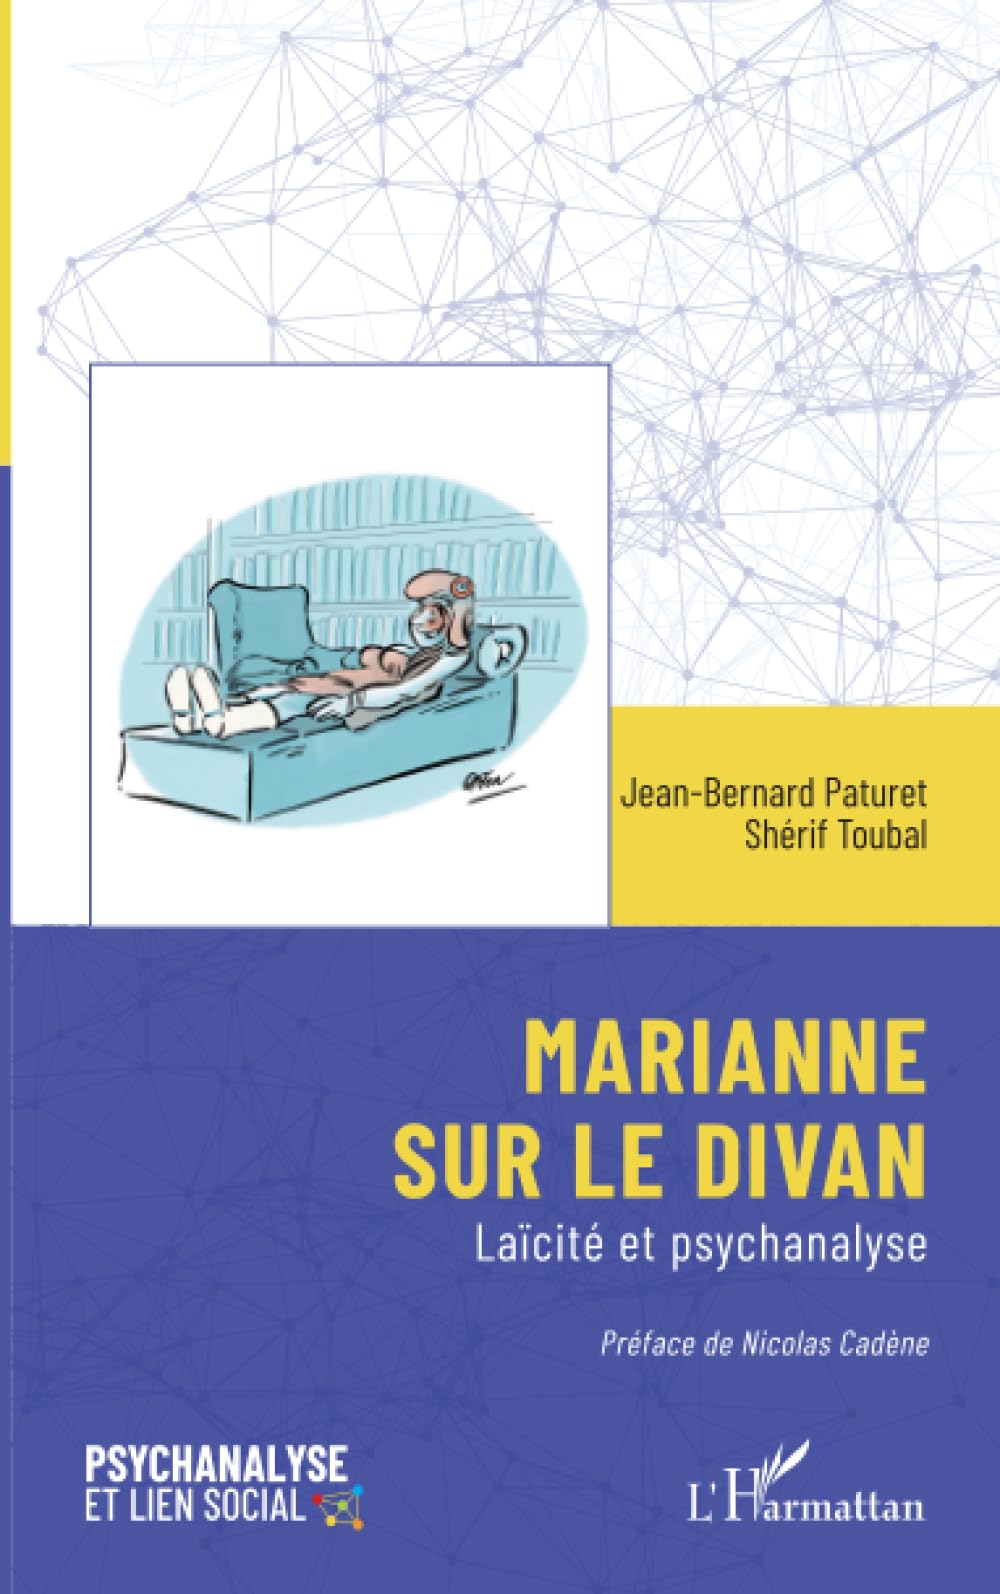 Marianne sur le divan : laïcité et psychanalyse